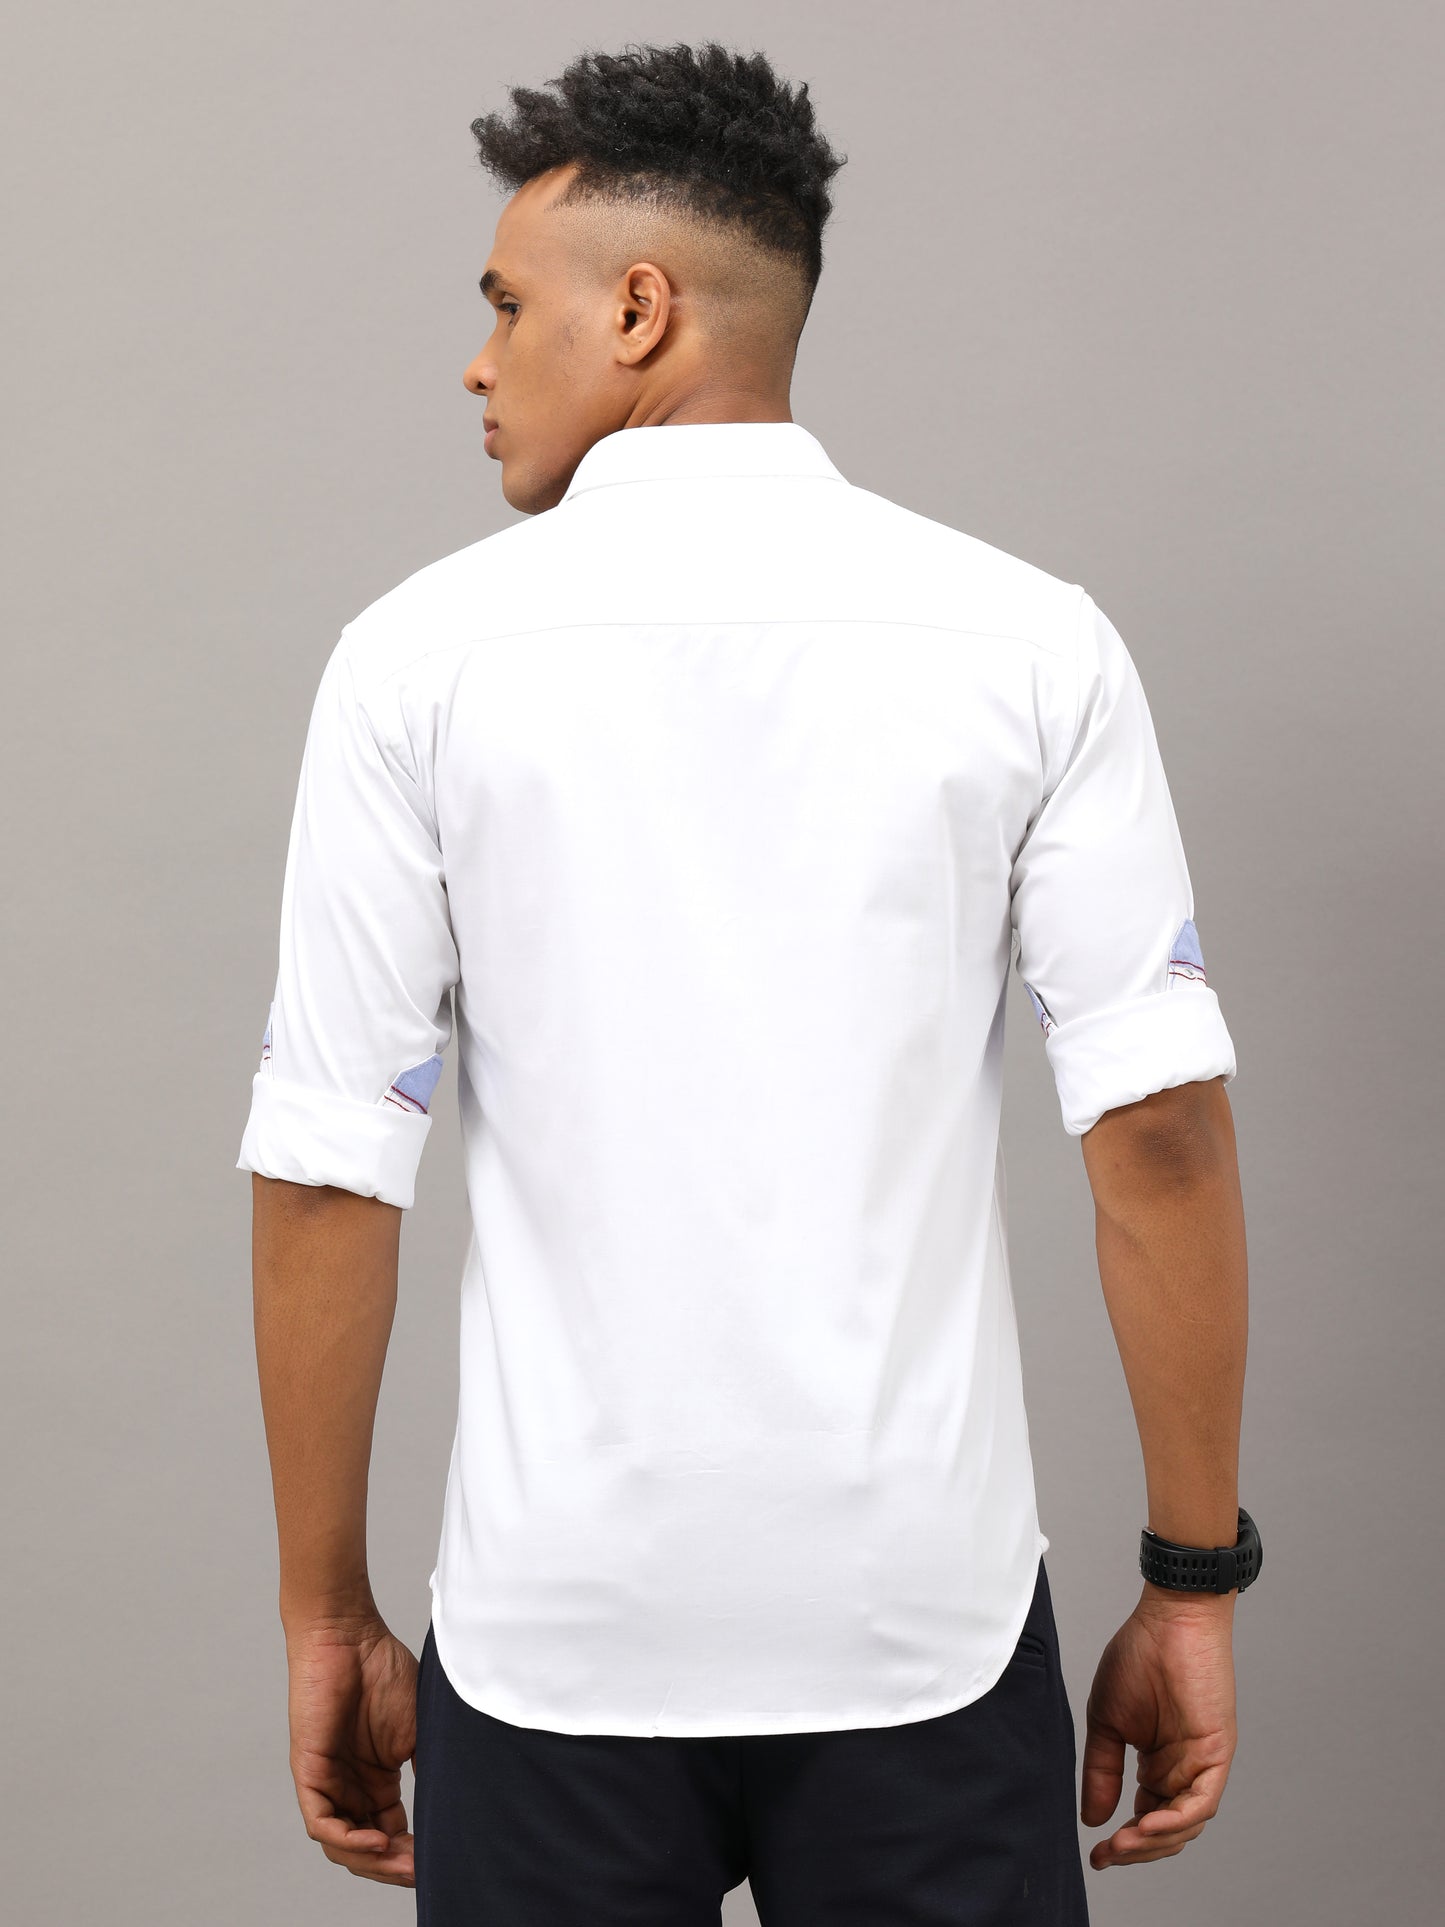 Plain White shirt full sleeve